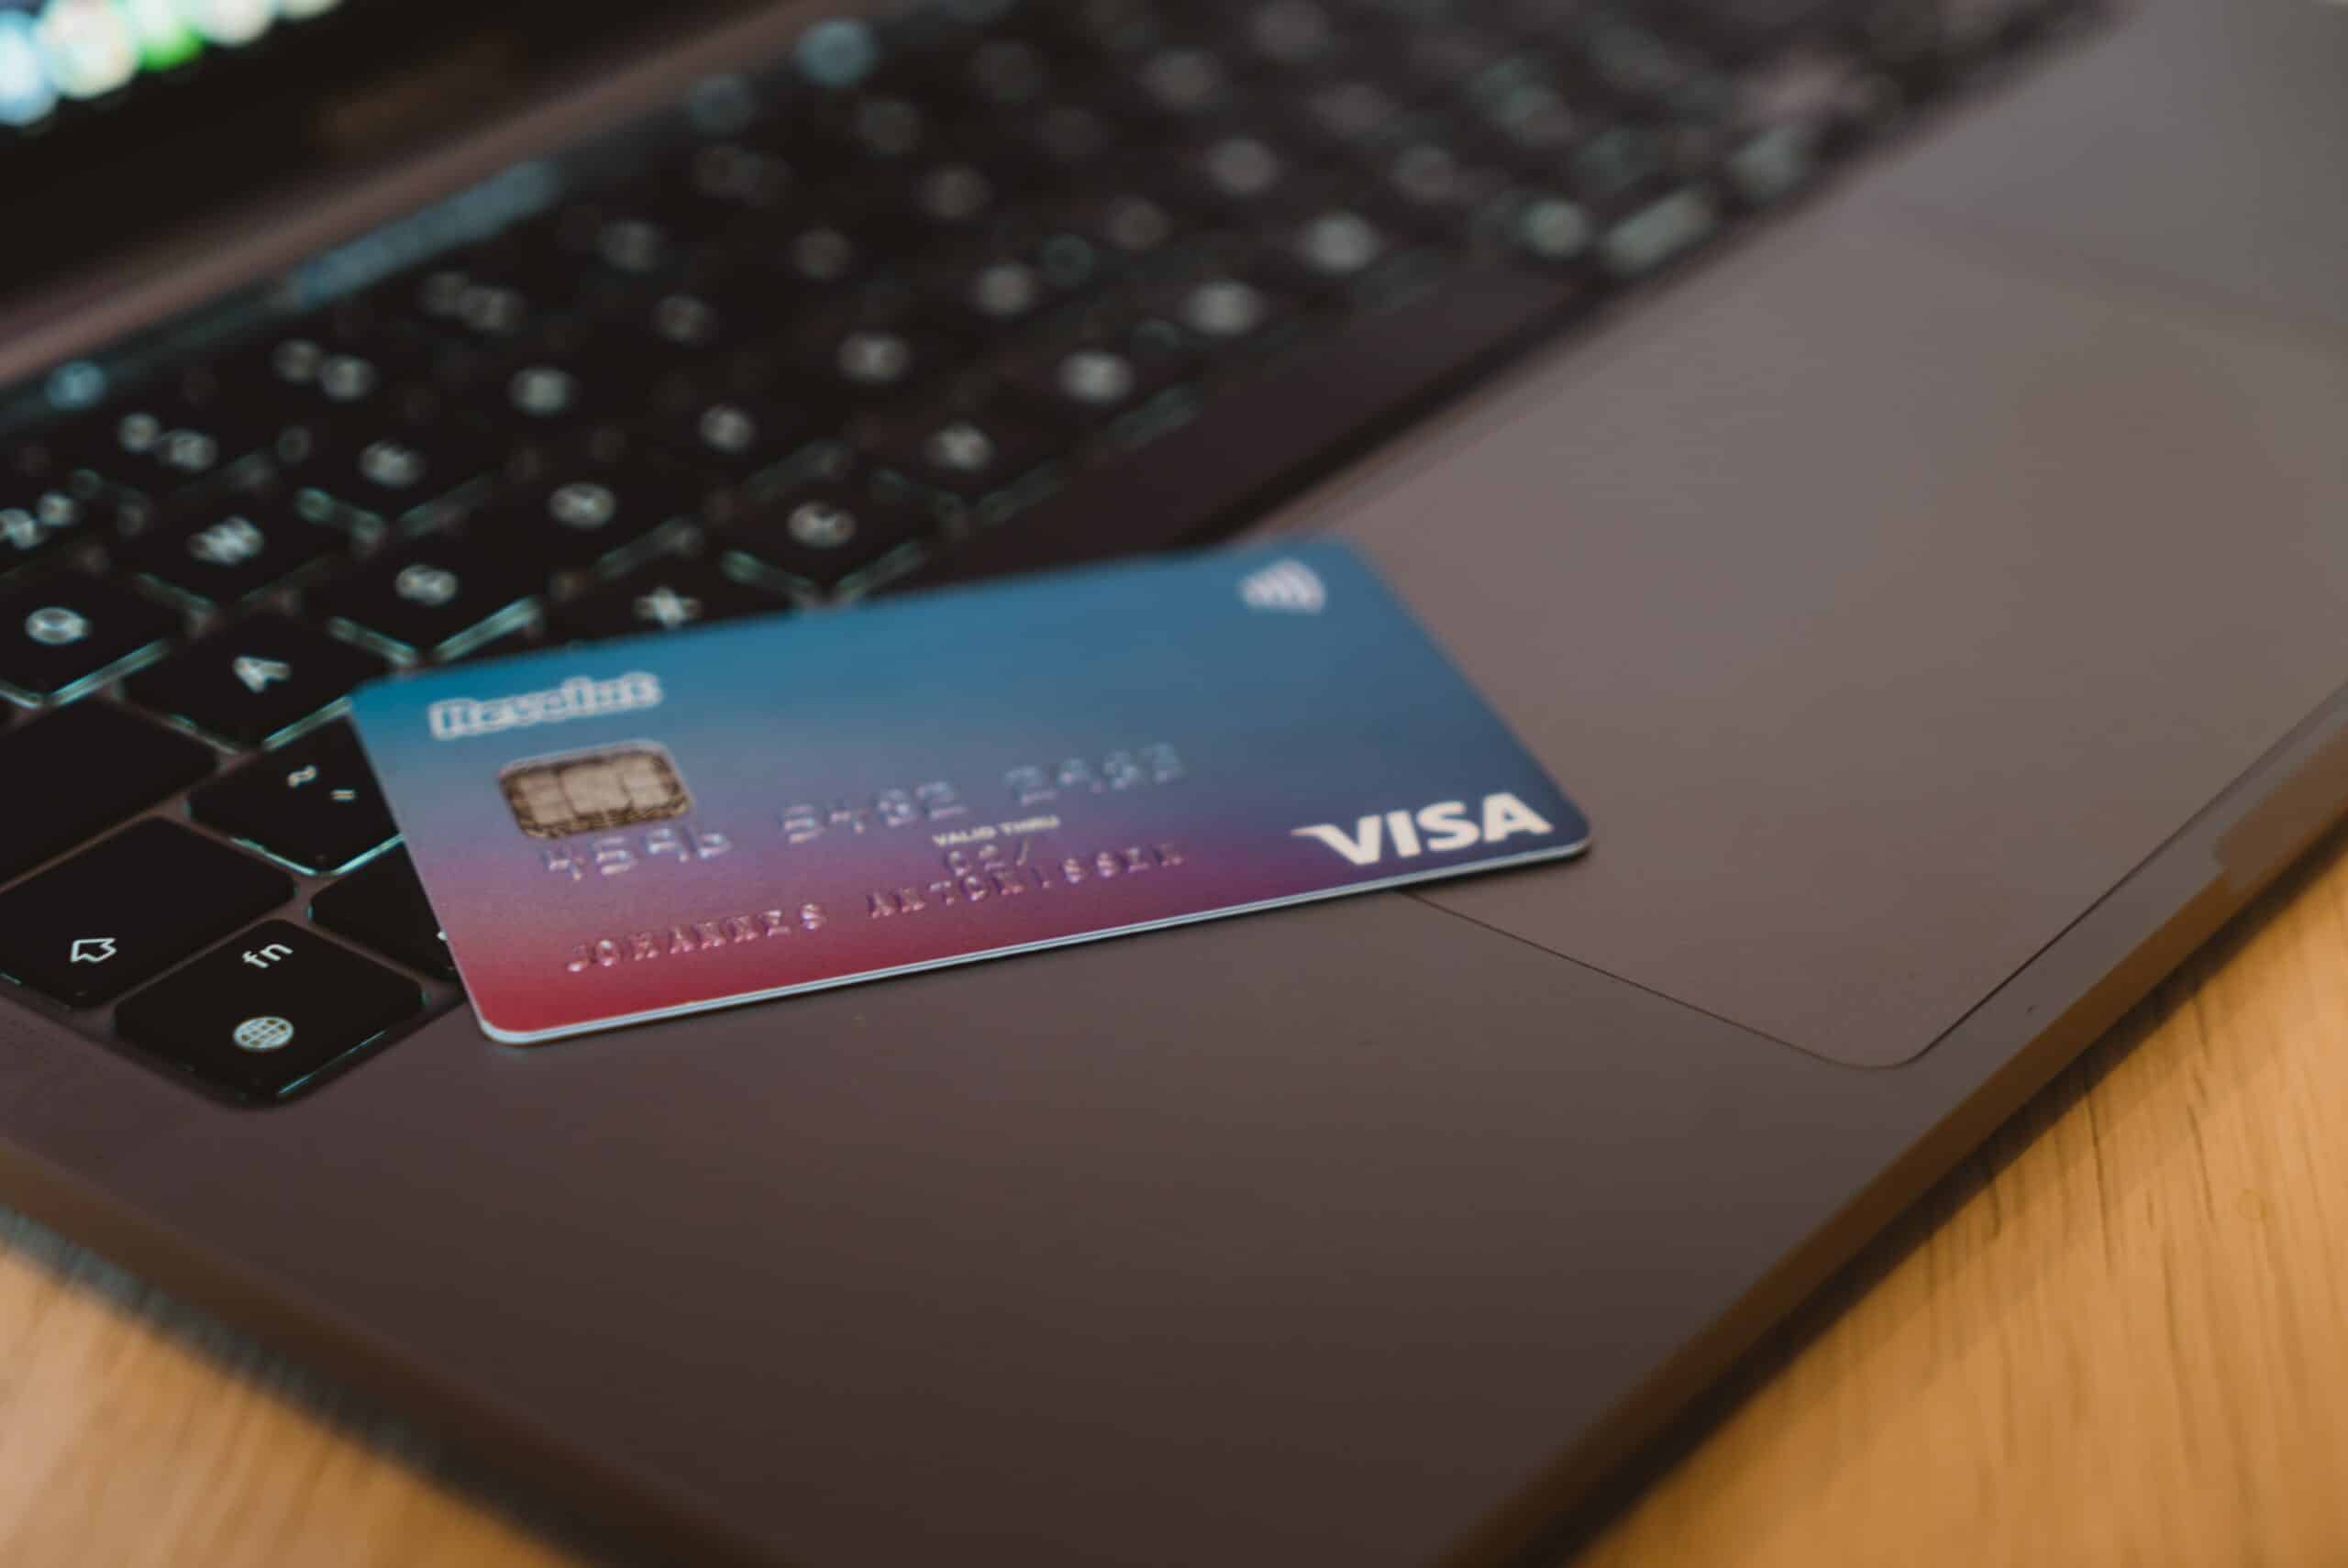 cartão de crédito azul e rosa da bandeira Visa deitado em cima de um notebook aberto. É possível ver um pequeno pedaço da tela do computador ligado